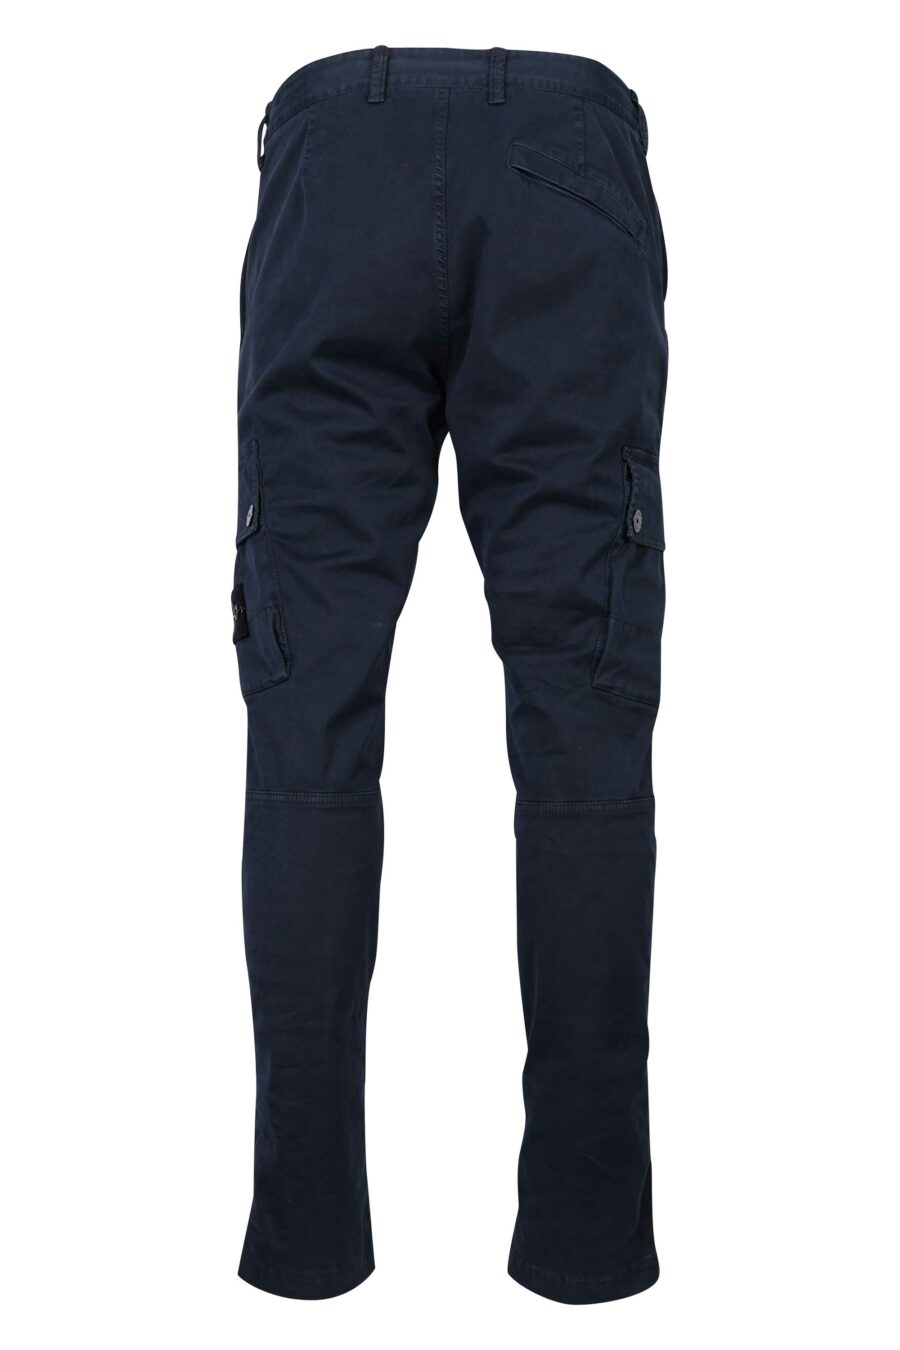 Pantalón azul "slim" con logo lateral parche - 8052572735042 2